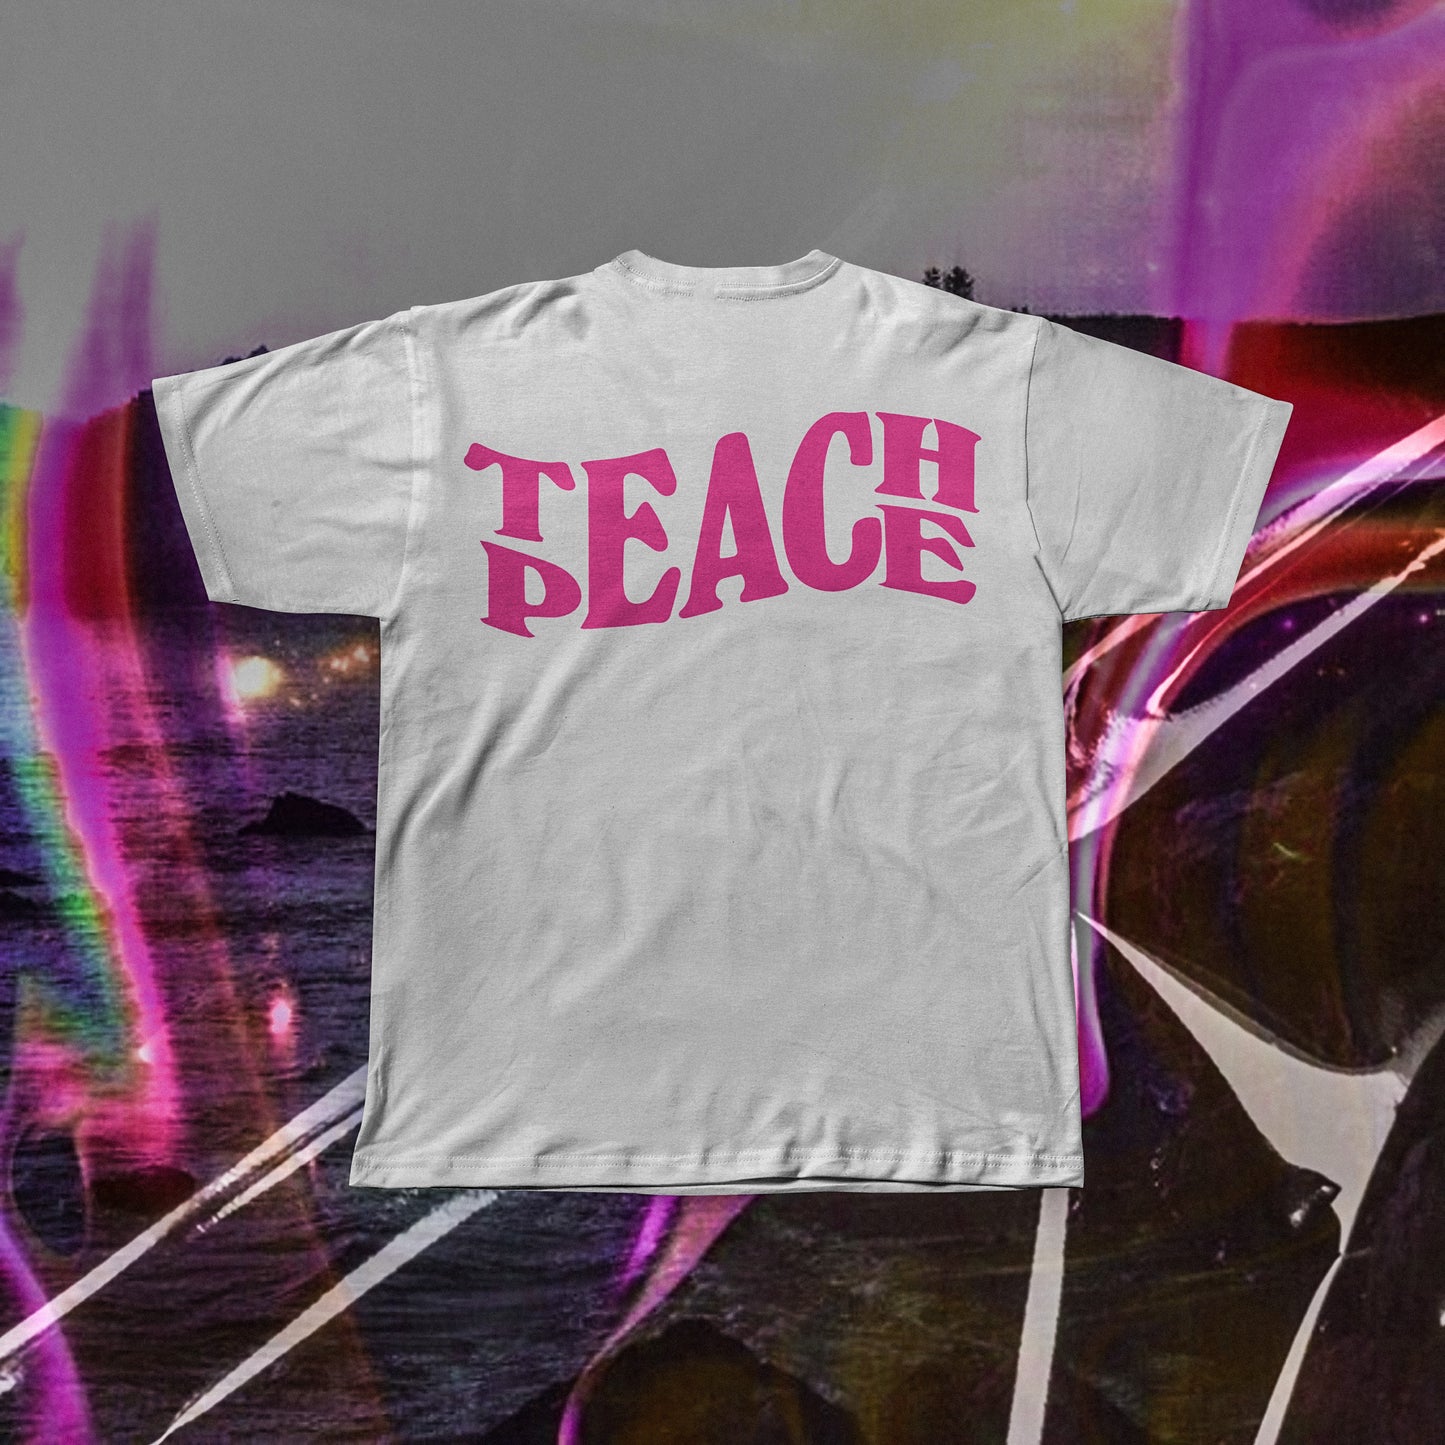 TEACH PEACE Regular T-shirt